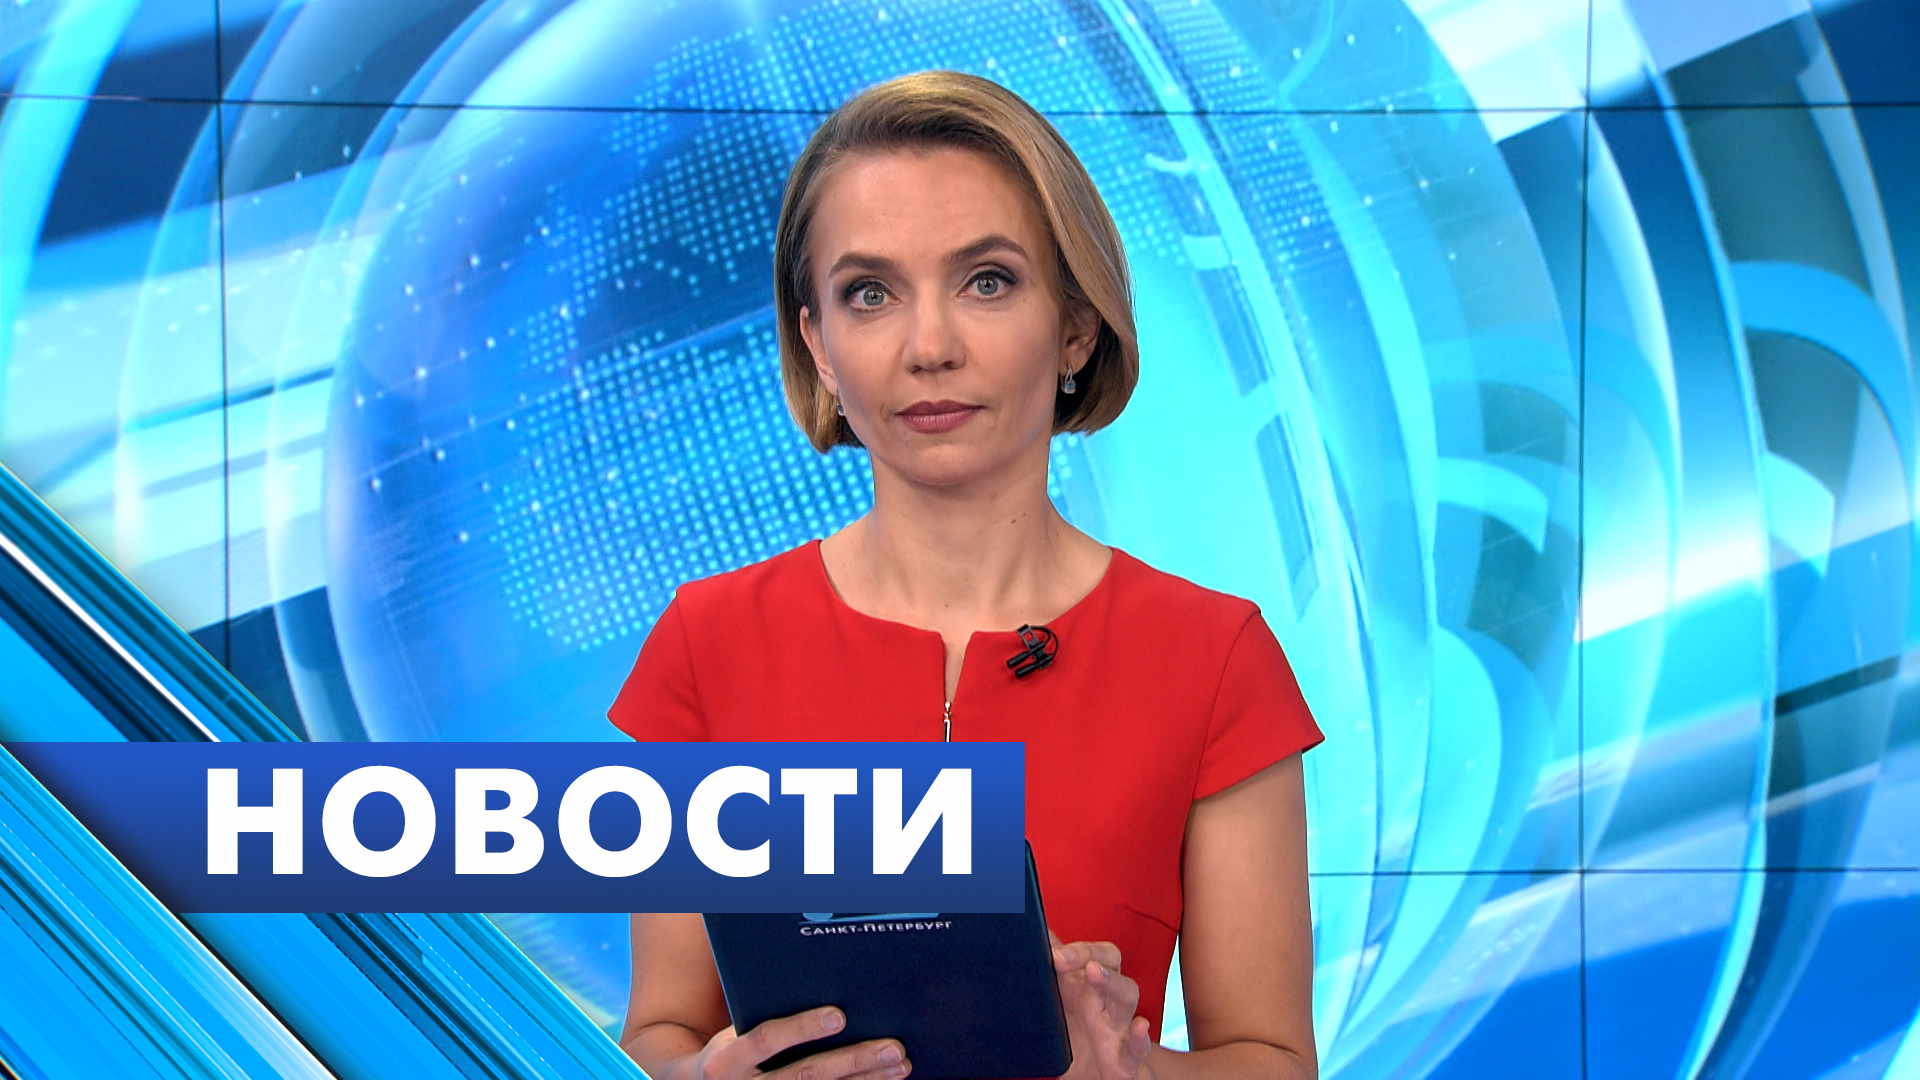 Главные новости Петербурга / 23 июня